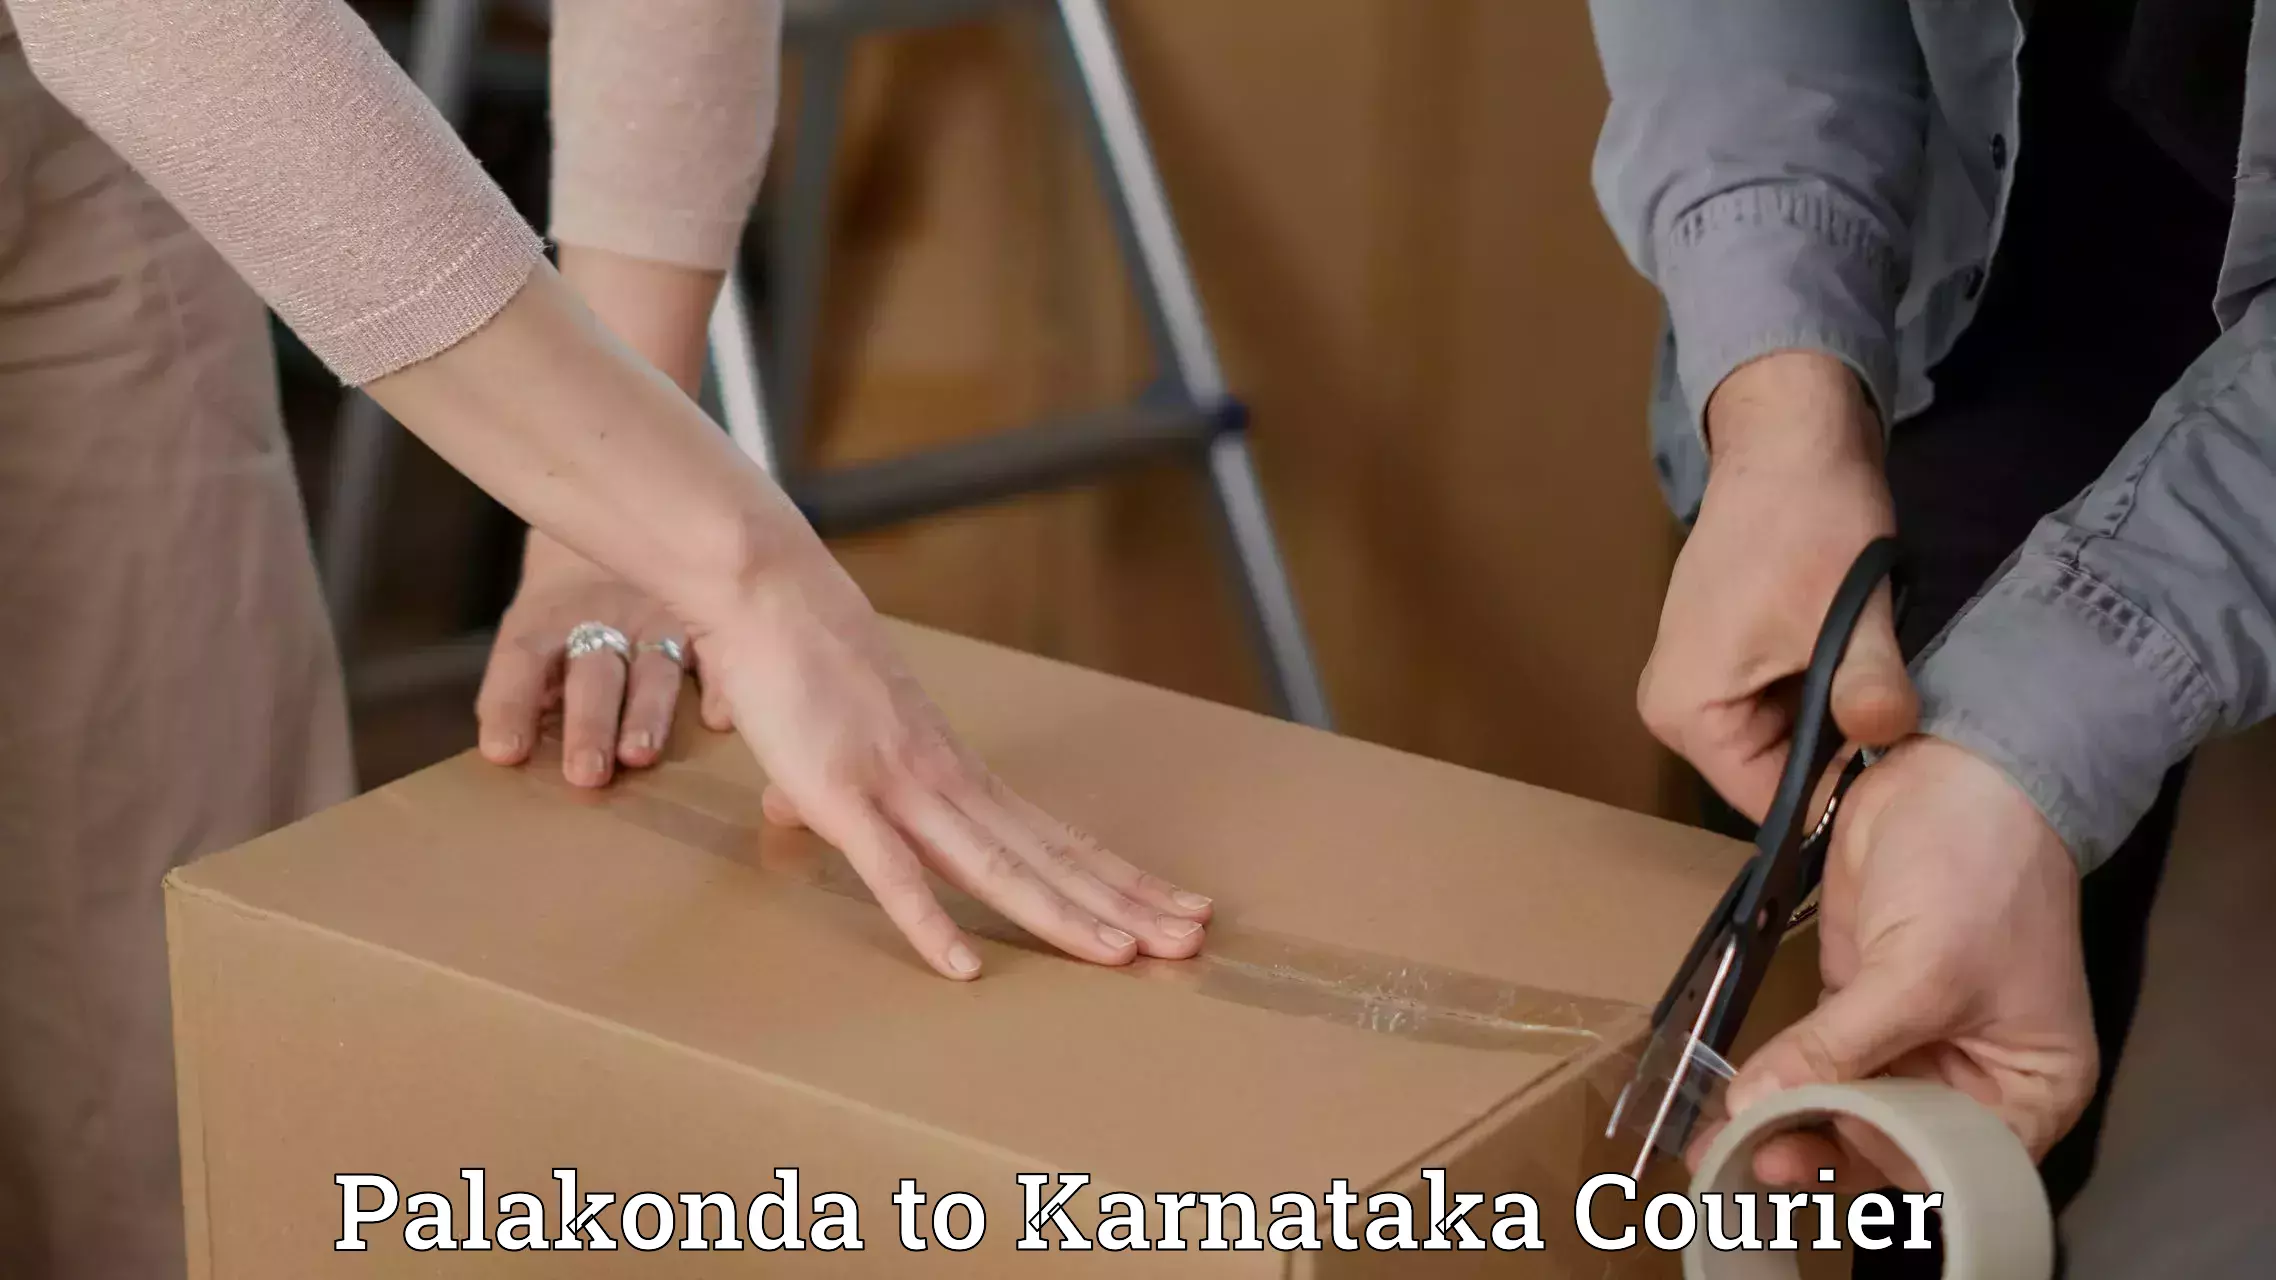 High-speed parcel service Palakonda to Karnataka